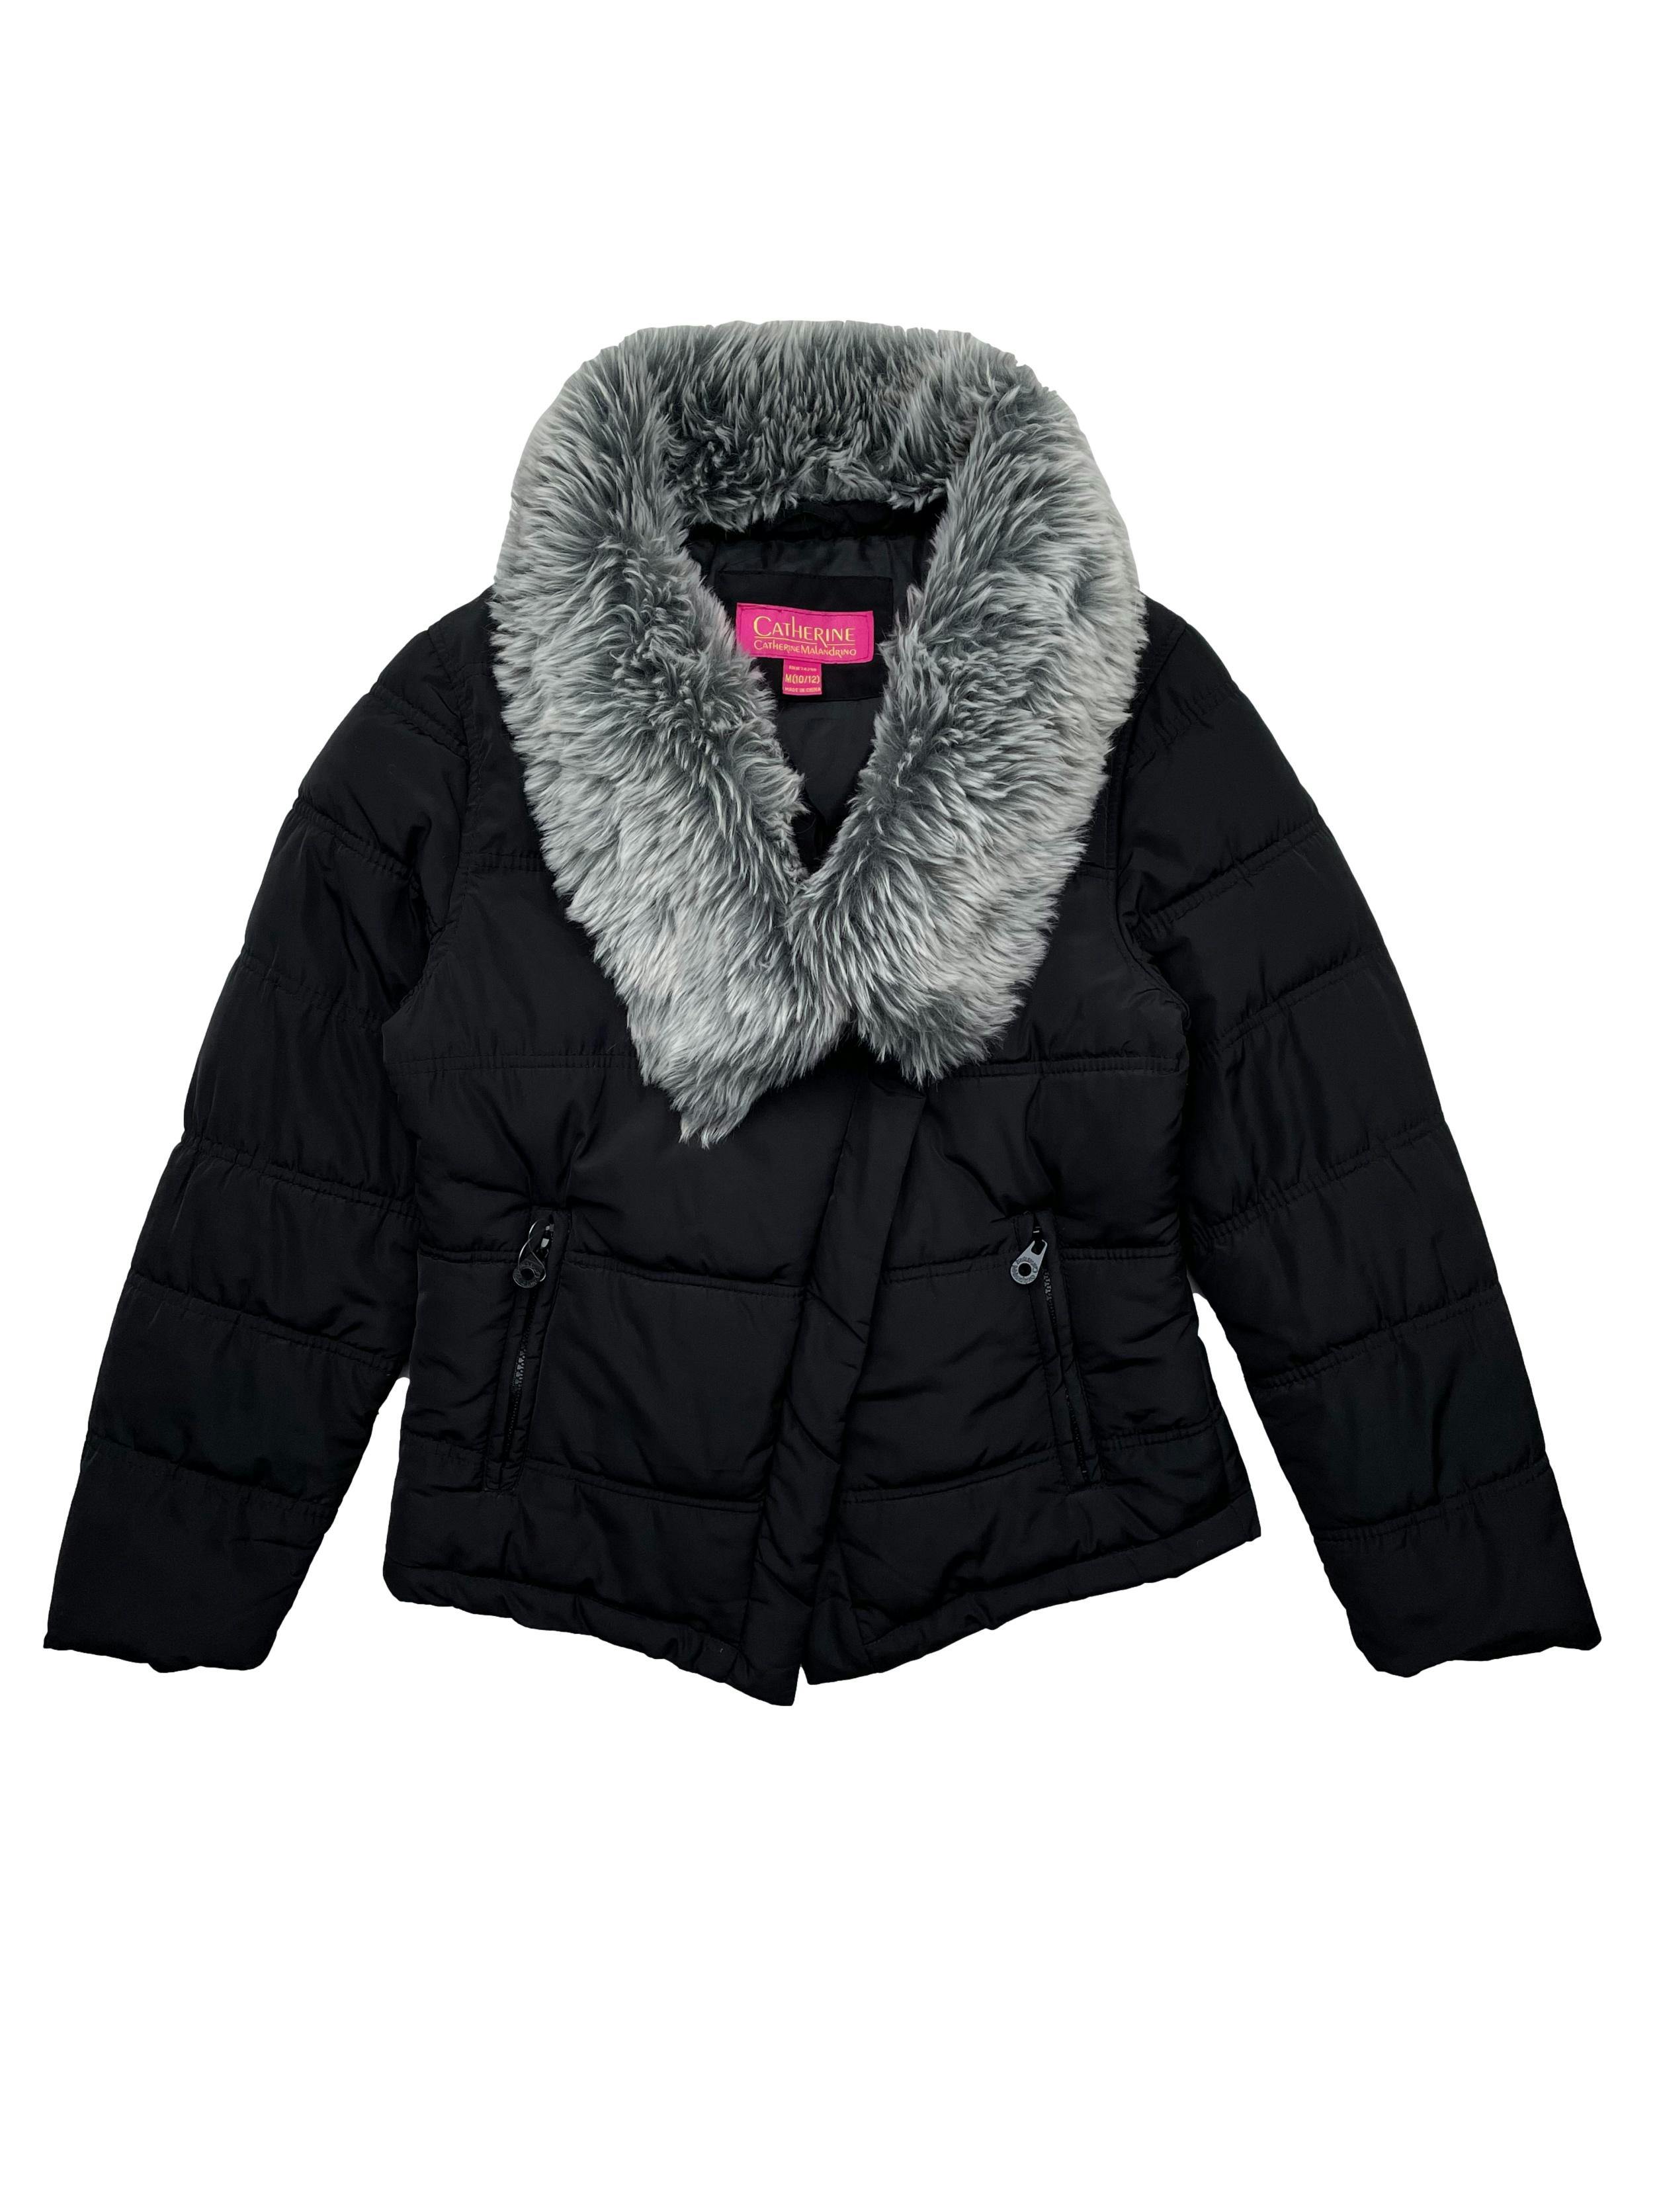 Puffer jacket negra Catherine Malandrino, cuello de peluche, con cierre, broches y bolsillos. Busto 90cm, Largo 55cm. 